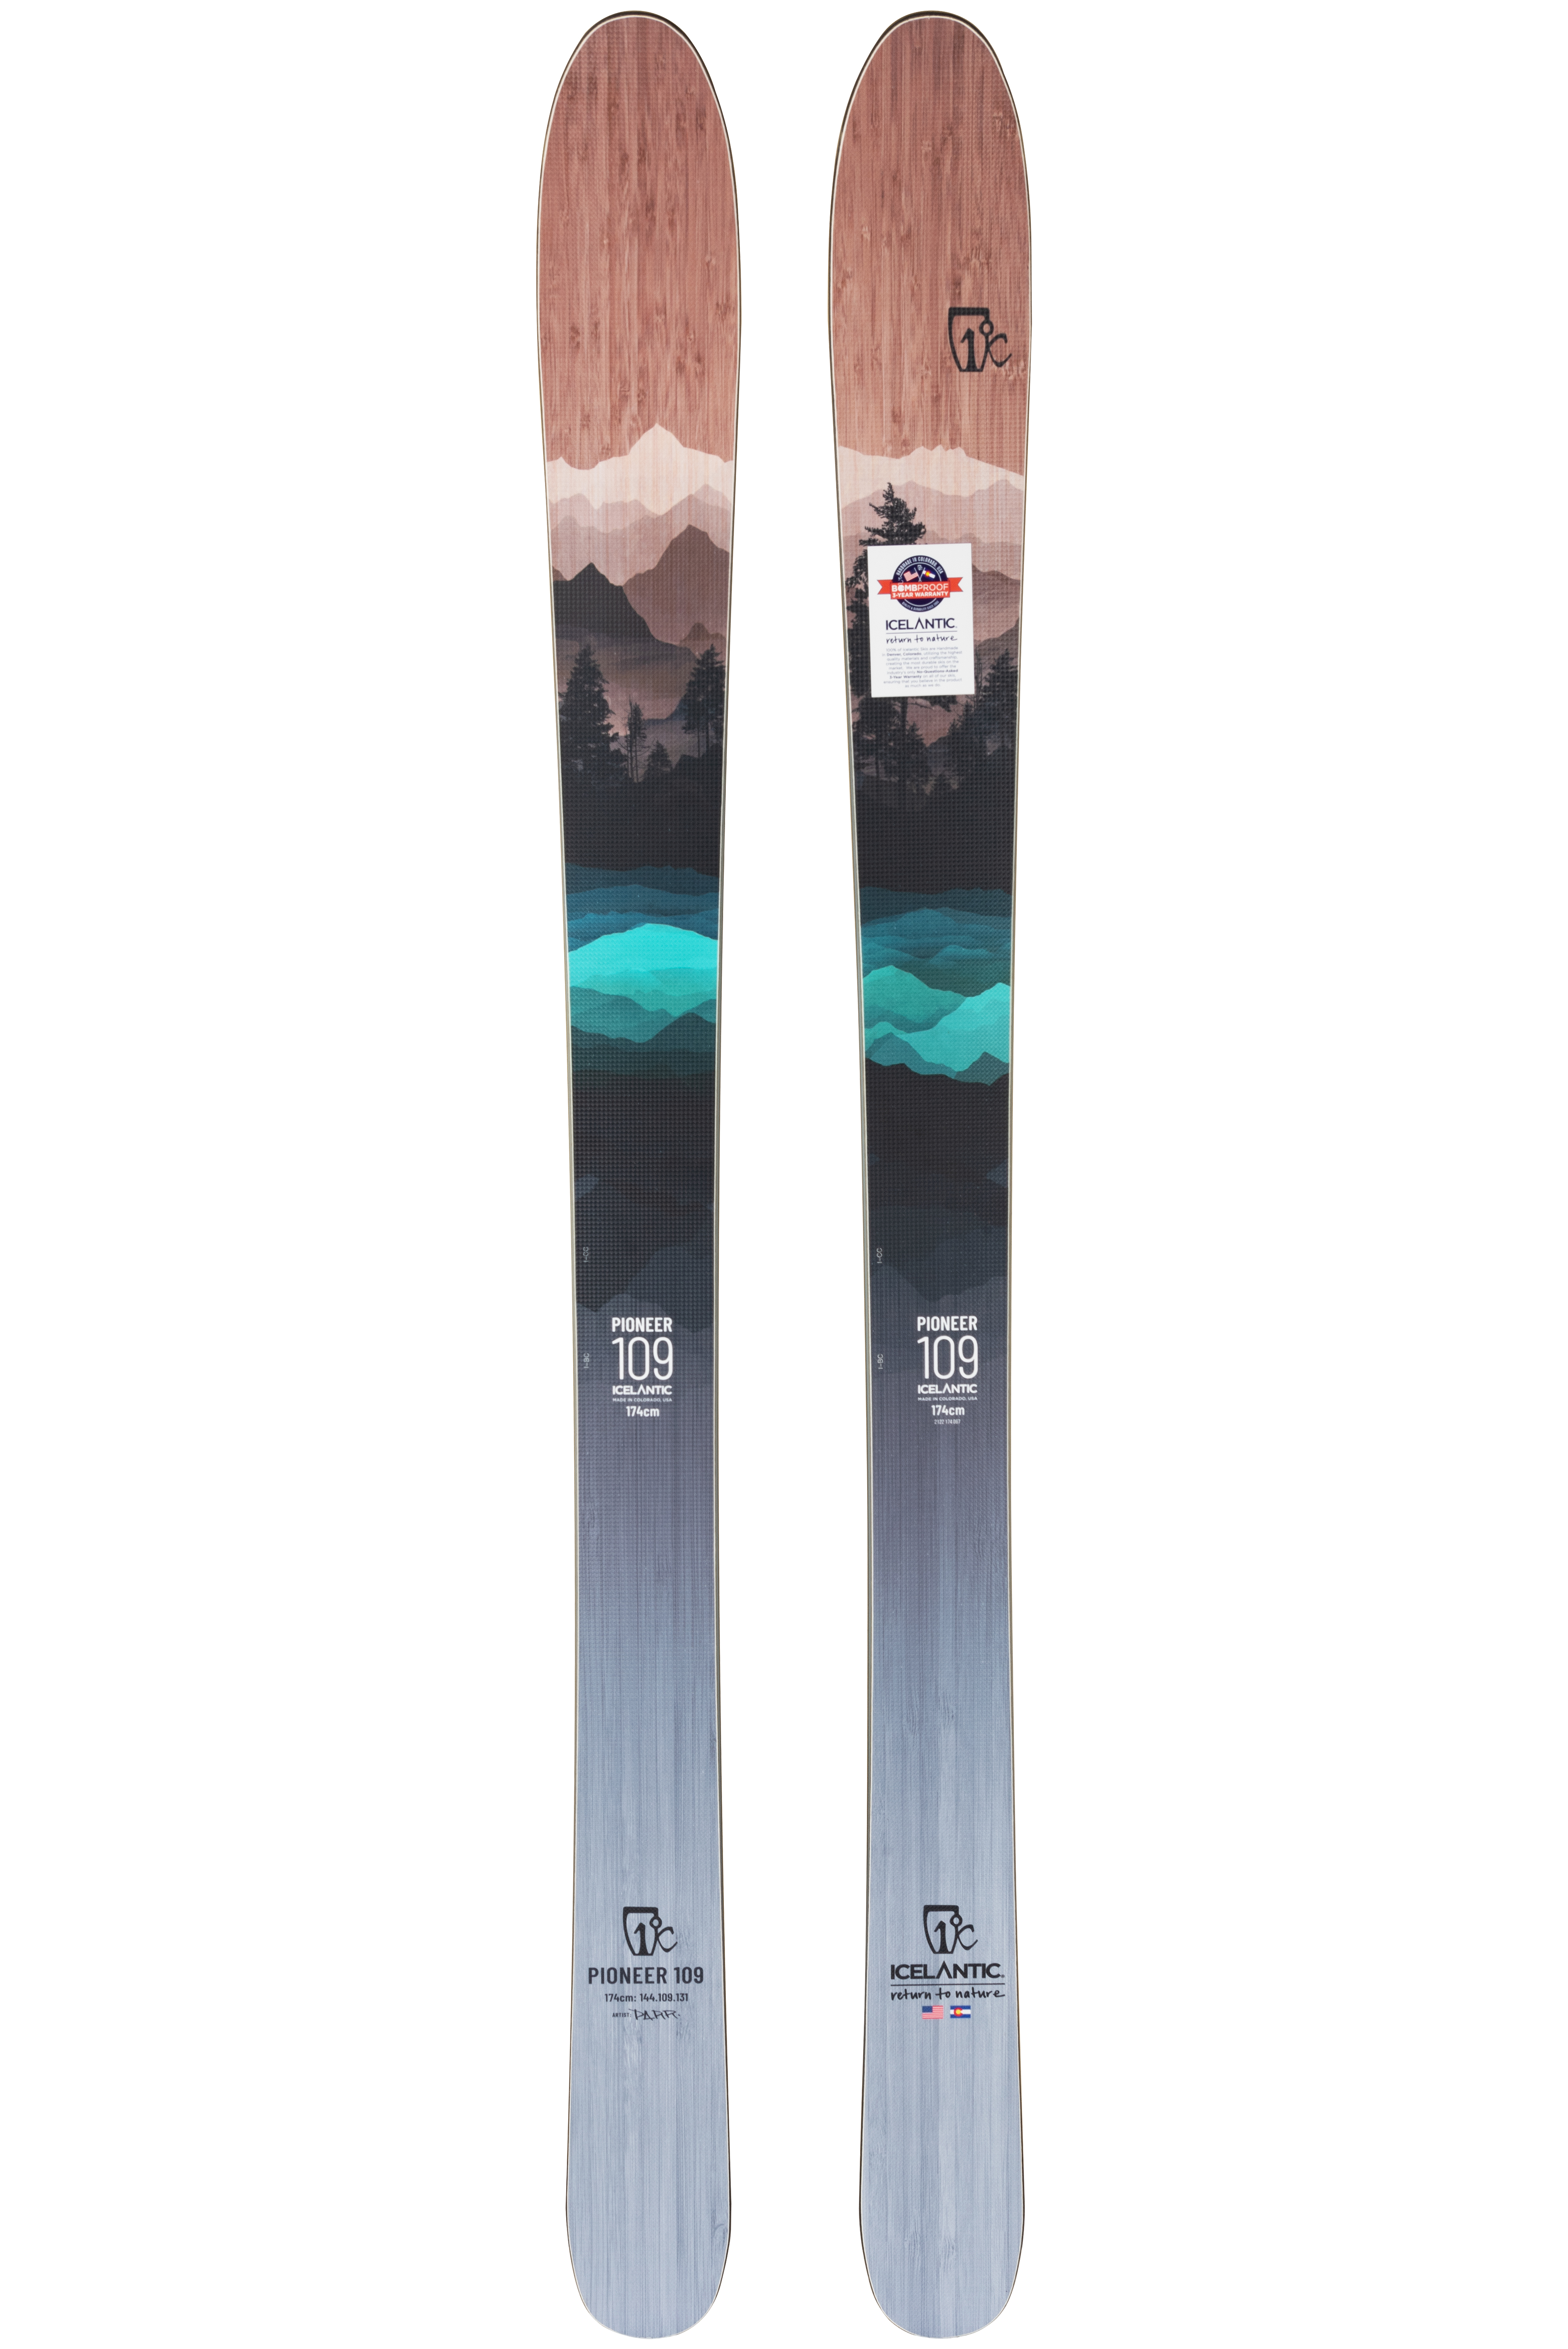 Купить лыжи для профессионалов Icelantic Pioneer 109 2021/2022 182cm в Киеве